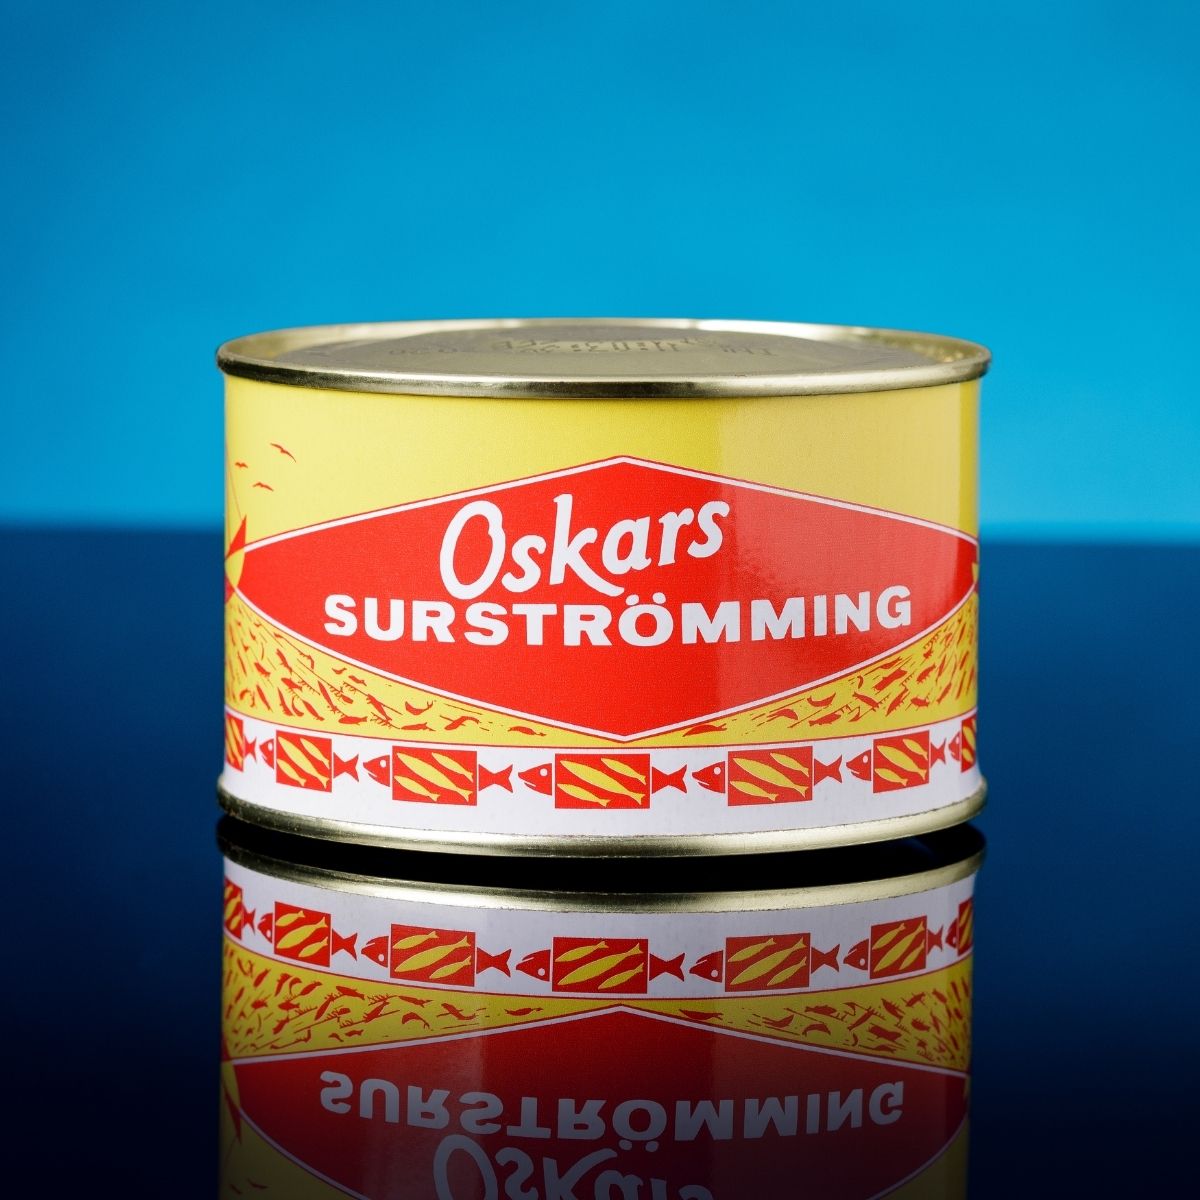 Oskars Surströmming- Swedish Fish can (fermented herring) - Energy snus